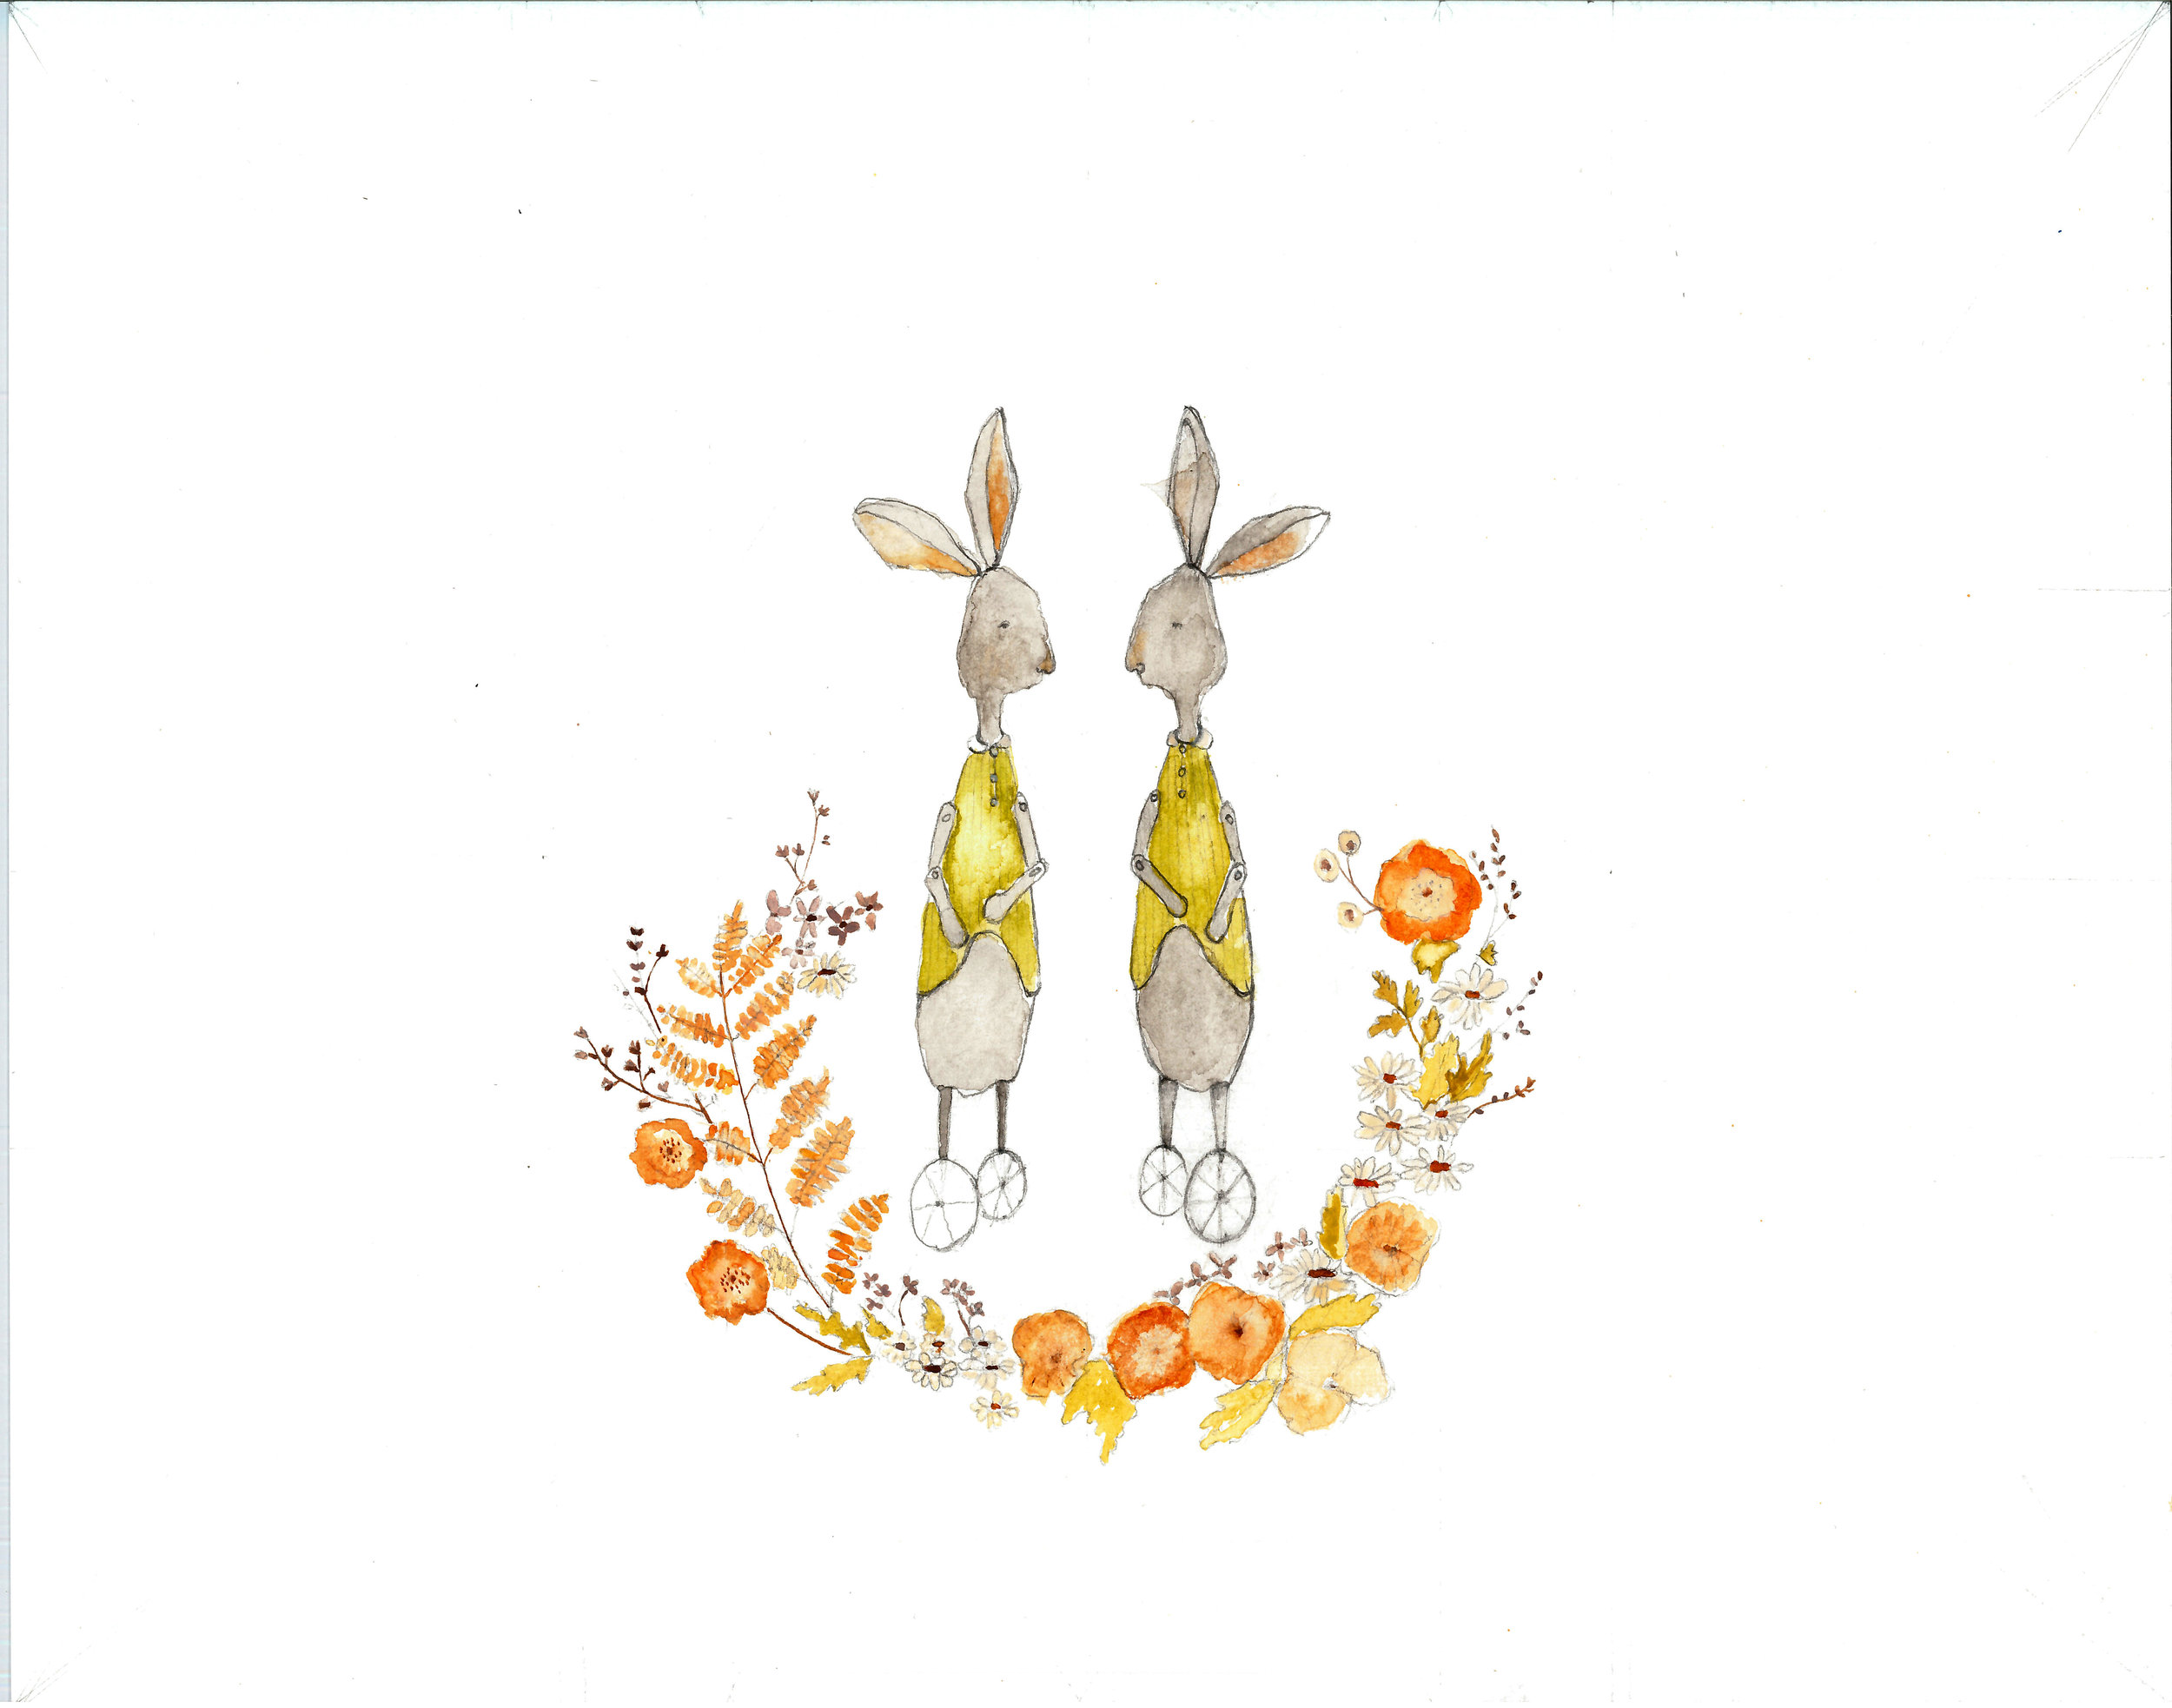 two bunnies on wheels 8 x 10.jpg